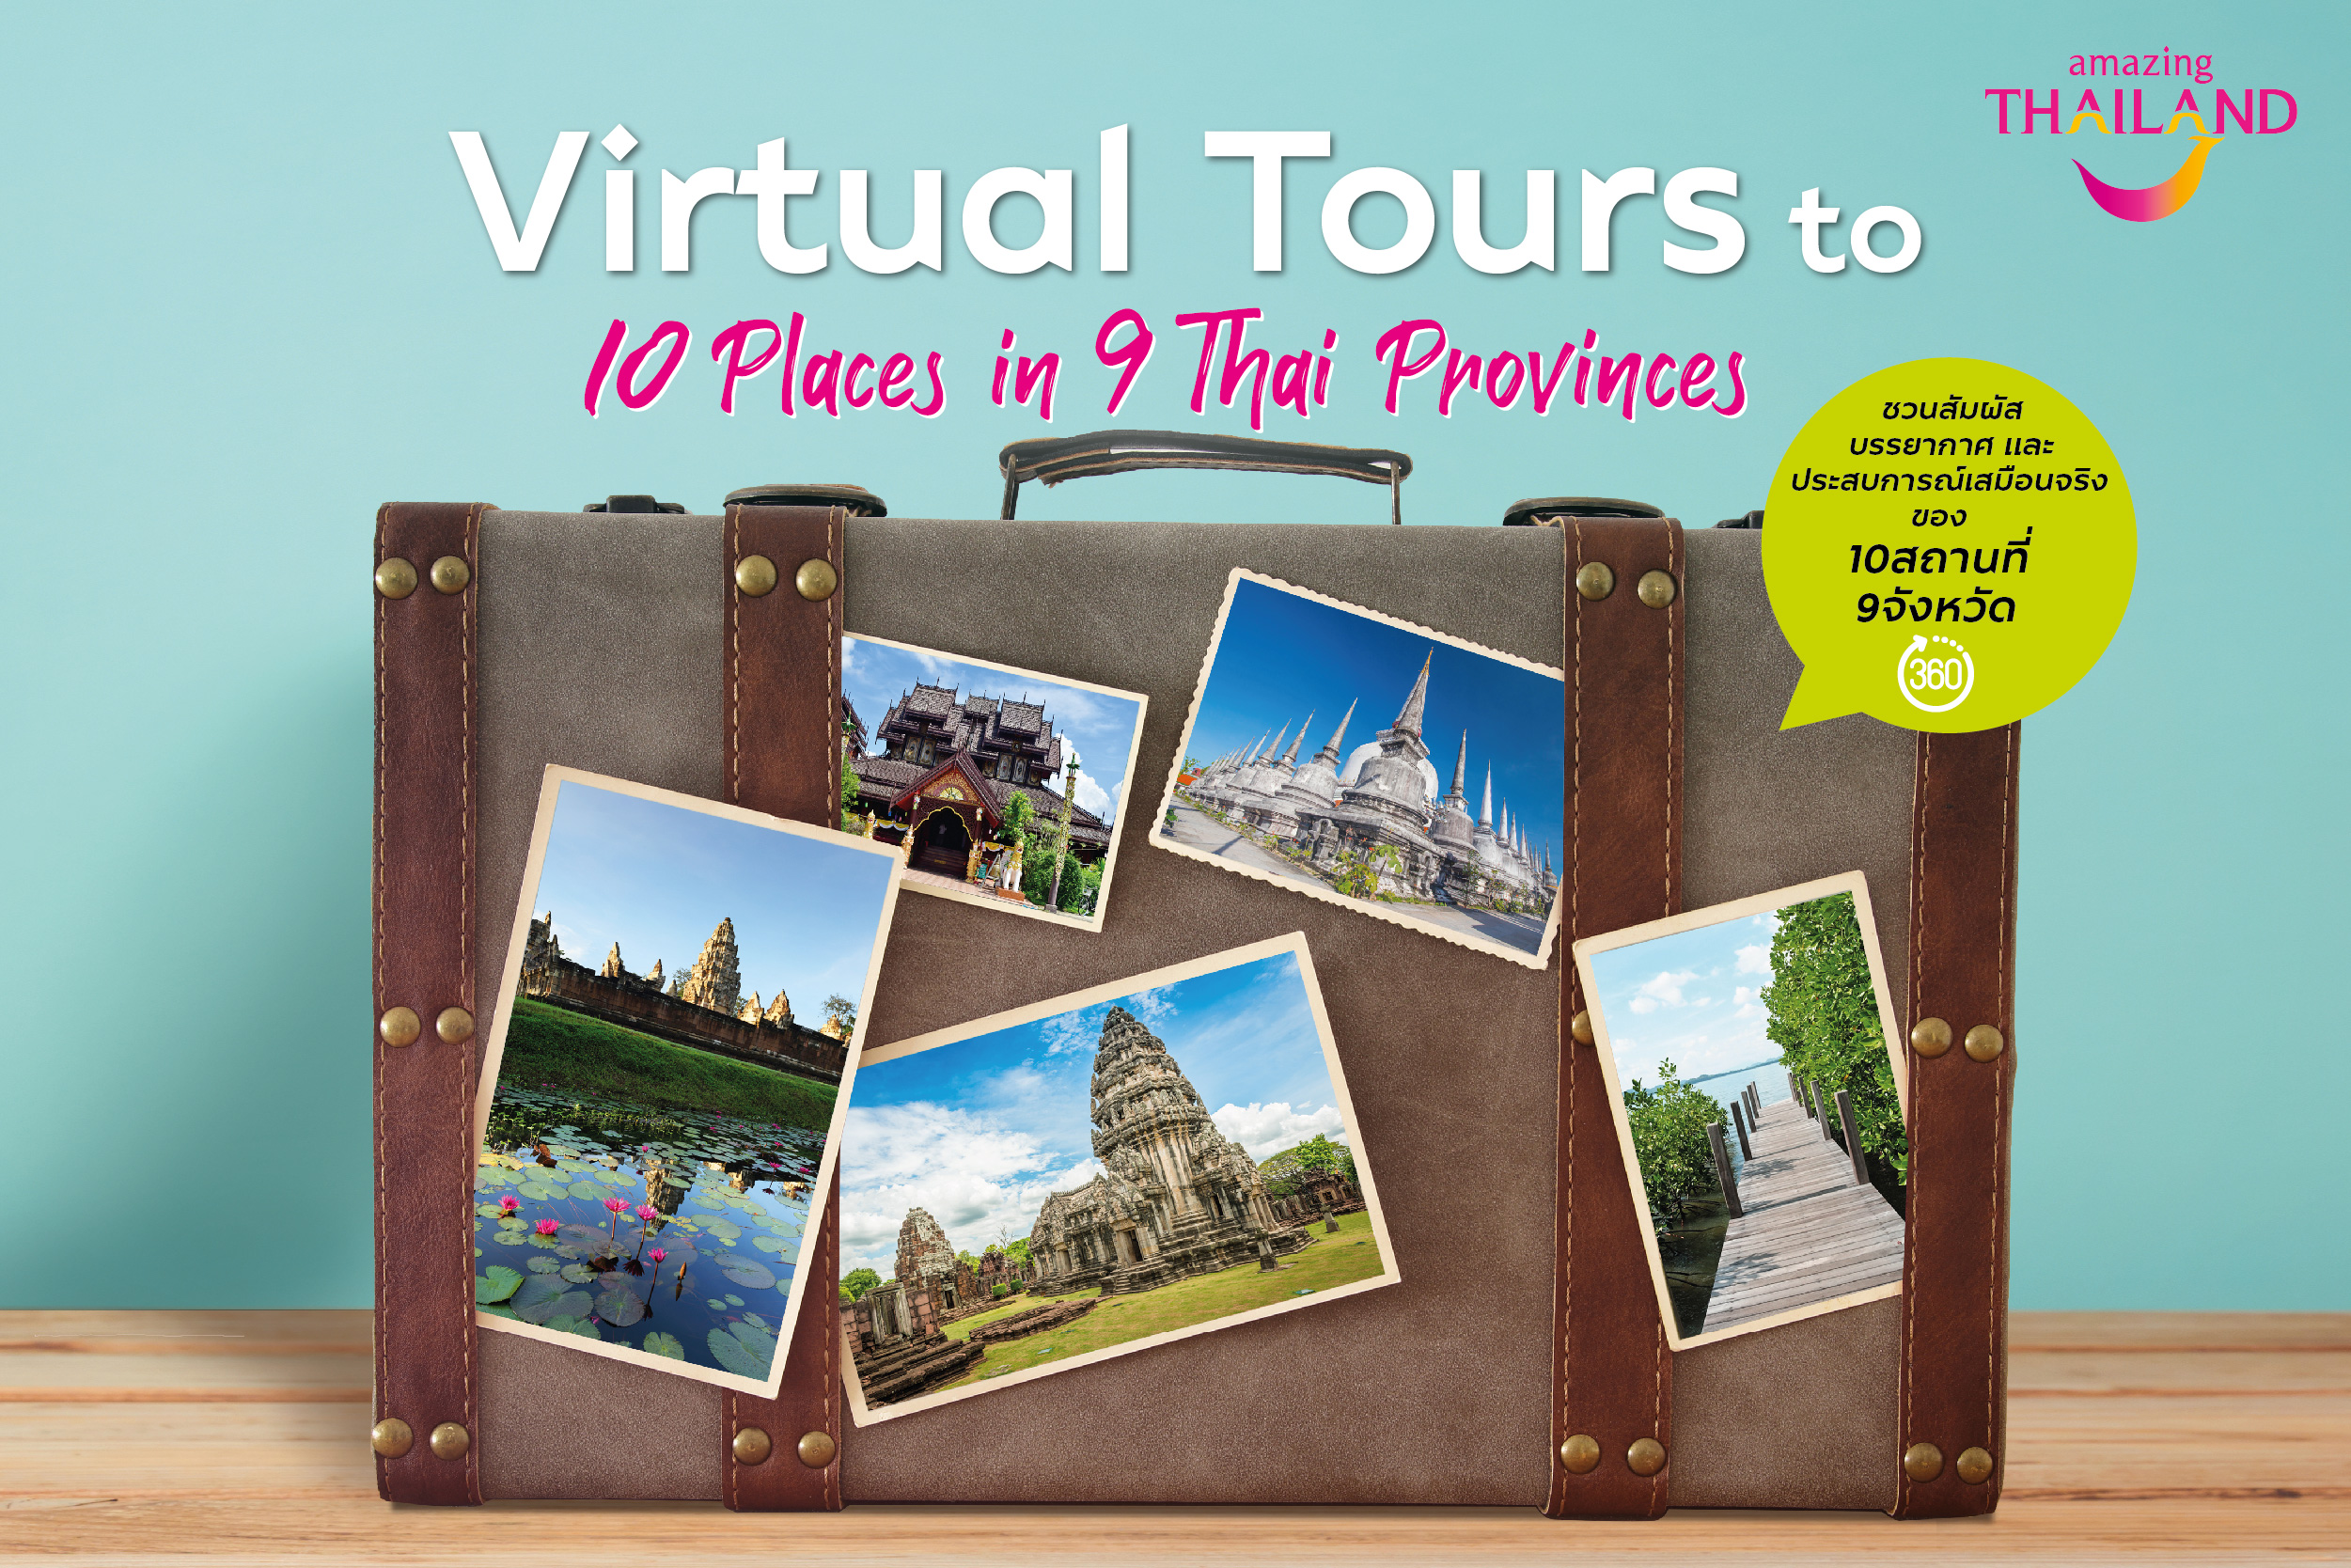 ททท. ชวนสัมผัสประสบการณ์ท่องเที่ยวเสมือนจริงผ่านเทคโนโลยี “Virtual Tours” สถานที่ท่องเที่ยว 10 แห่งใน 9 จังหวัดทั่วไทย